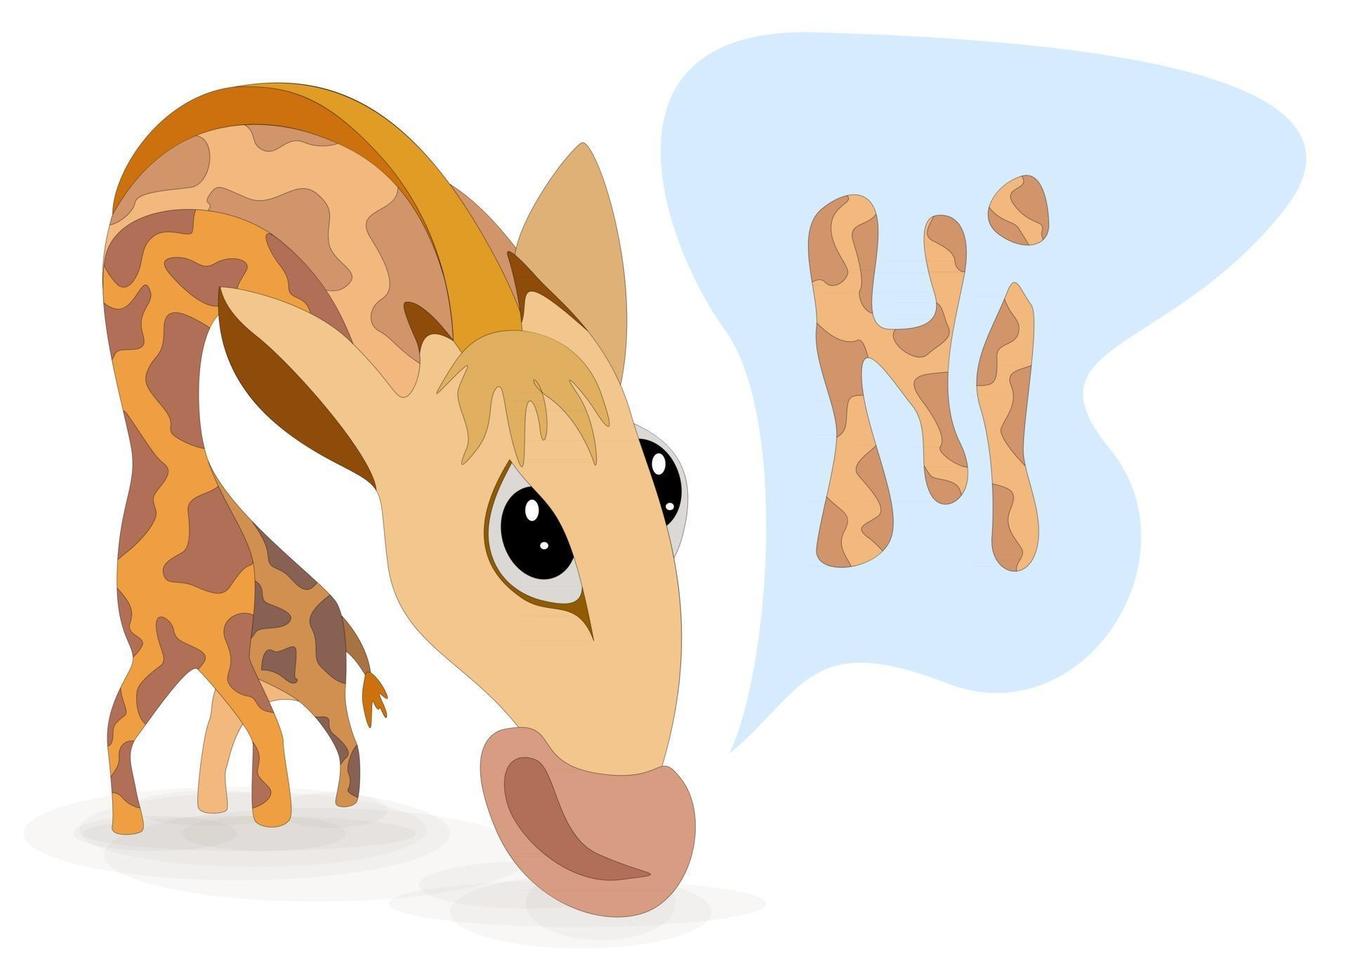 Imagen vectorial de una jirafa en una pose incómoda saludando con una palabra ubicada junto a ella en una nube y que tiene el color de una jirafa vector